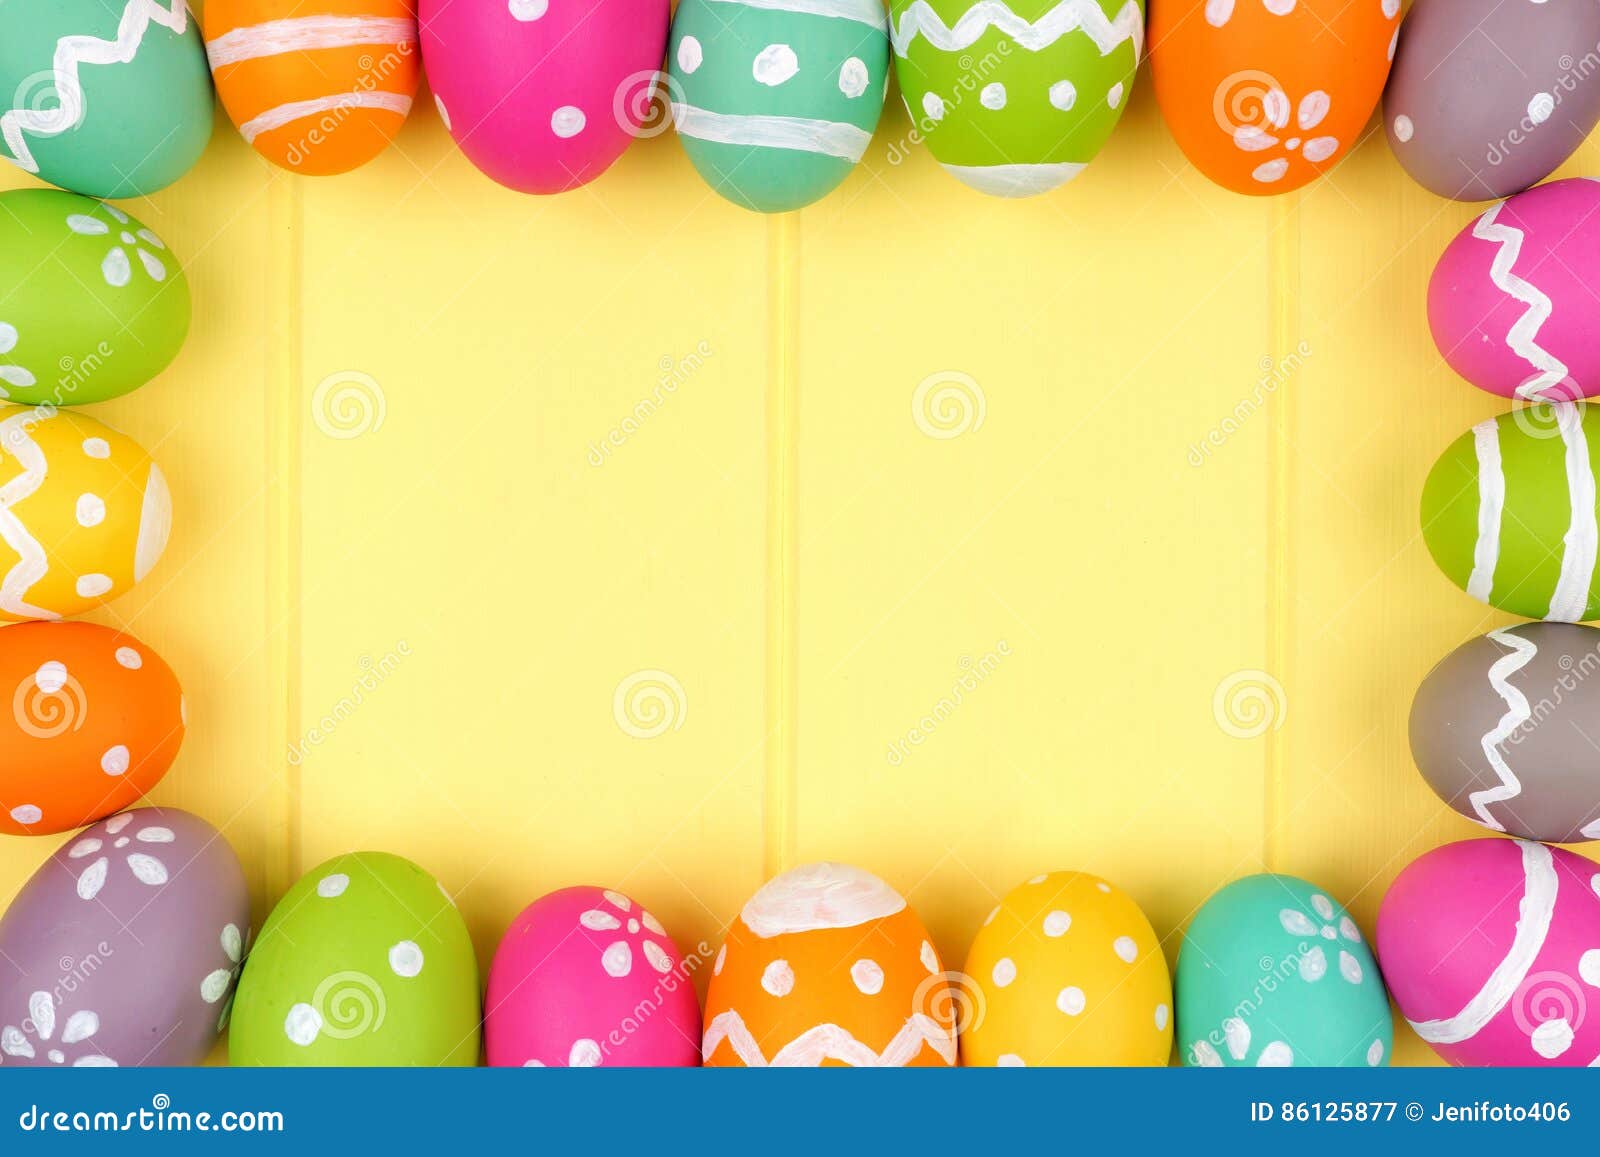 Quadro do ovo da páscoa contra a madeira amarela. Quadro colorido do ovo da páscoa contra um fundo de madeira amarelo